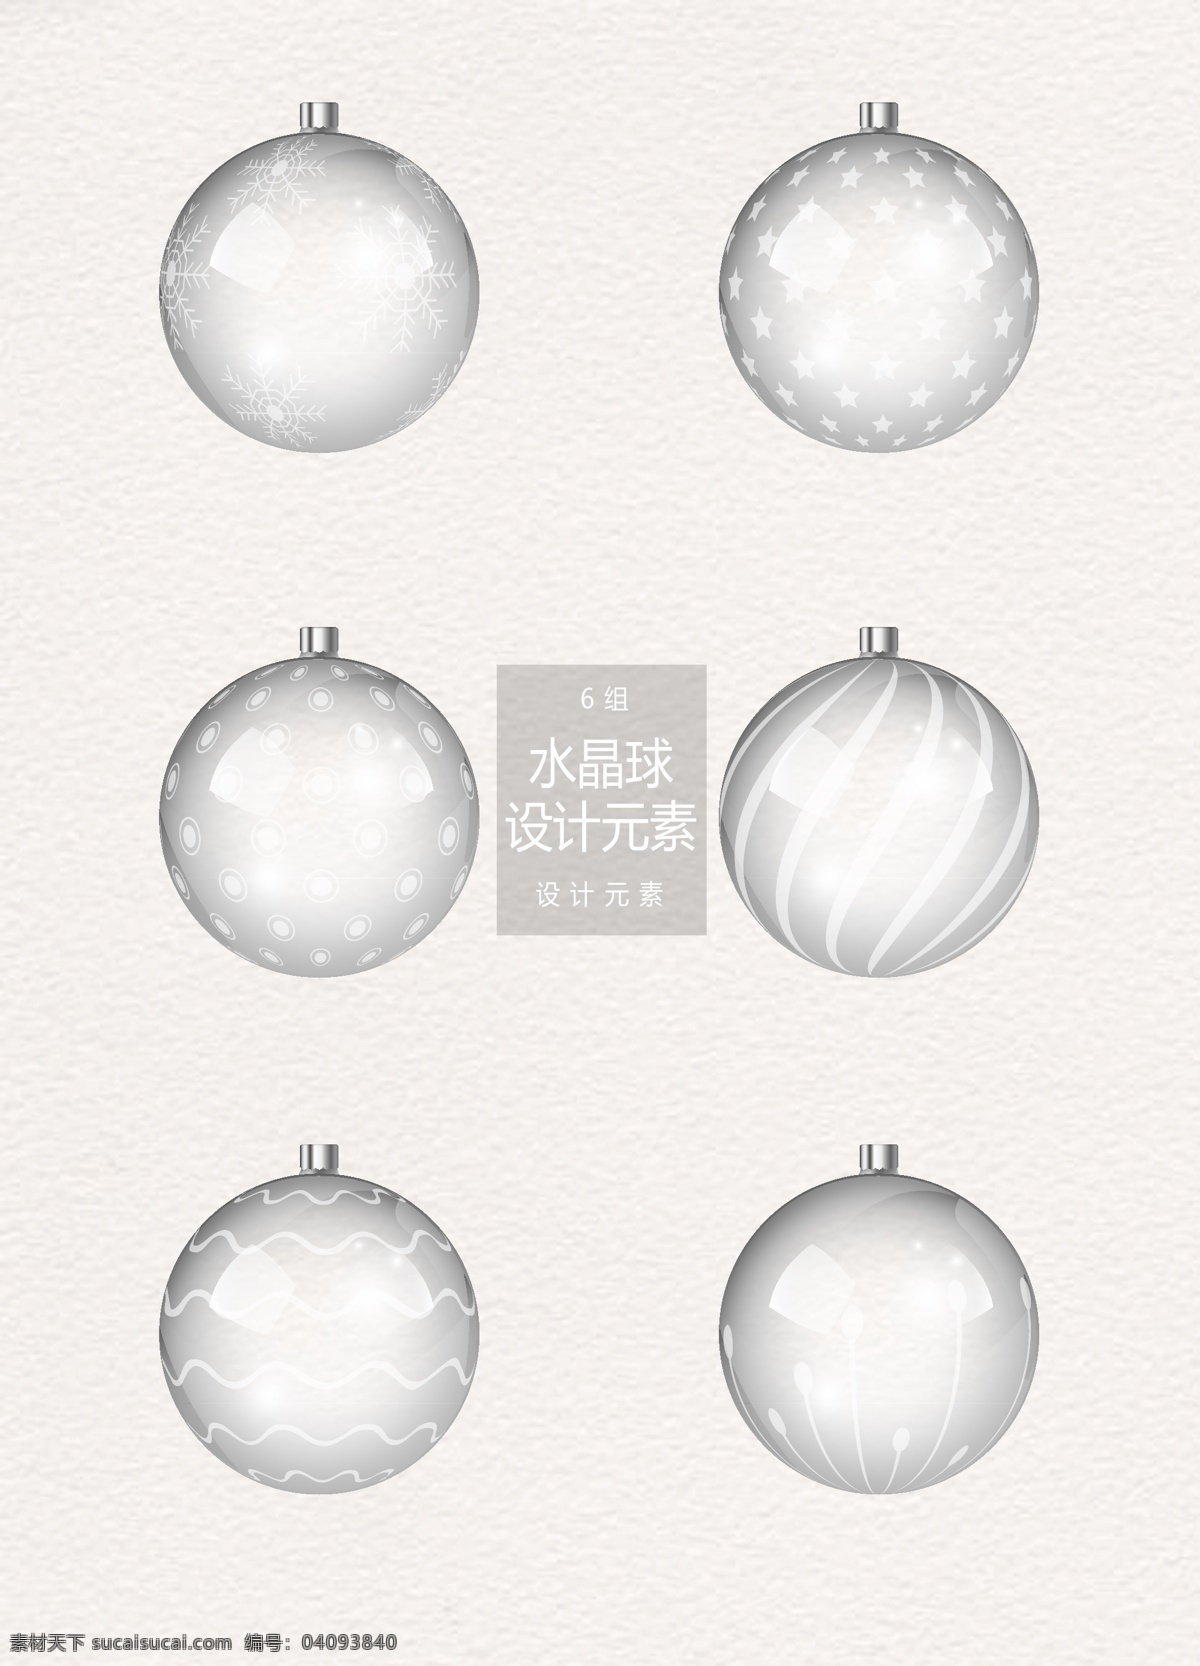 圣诞 水晶球 元素 圣诞节 设计元素 圣诞树 ai素材 圣诞水晶球